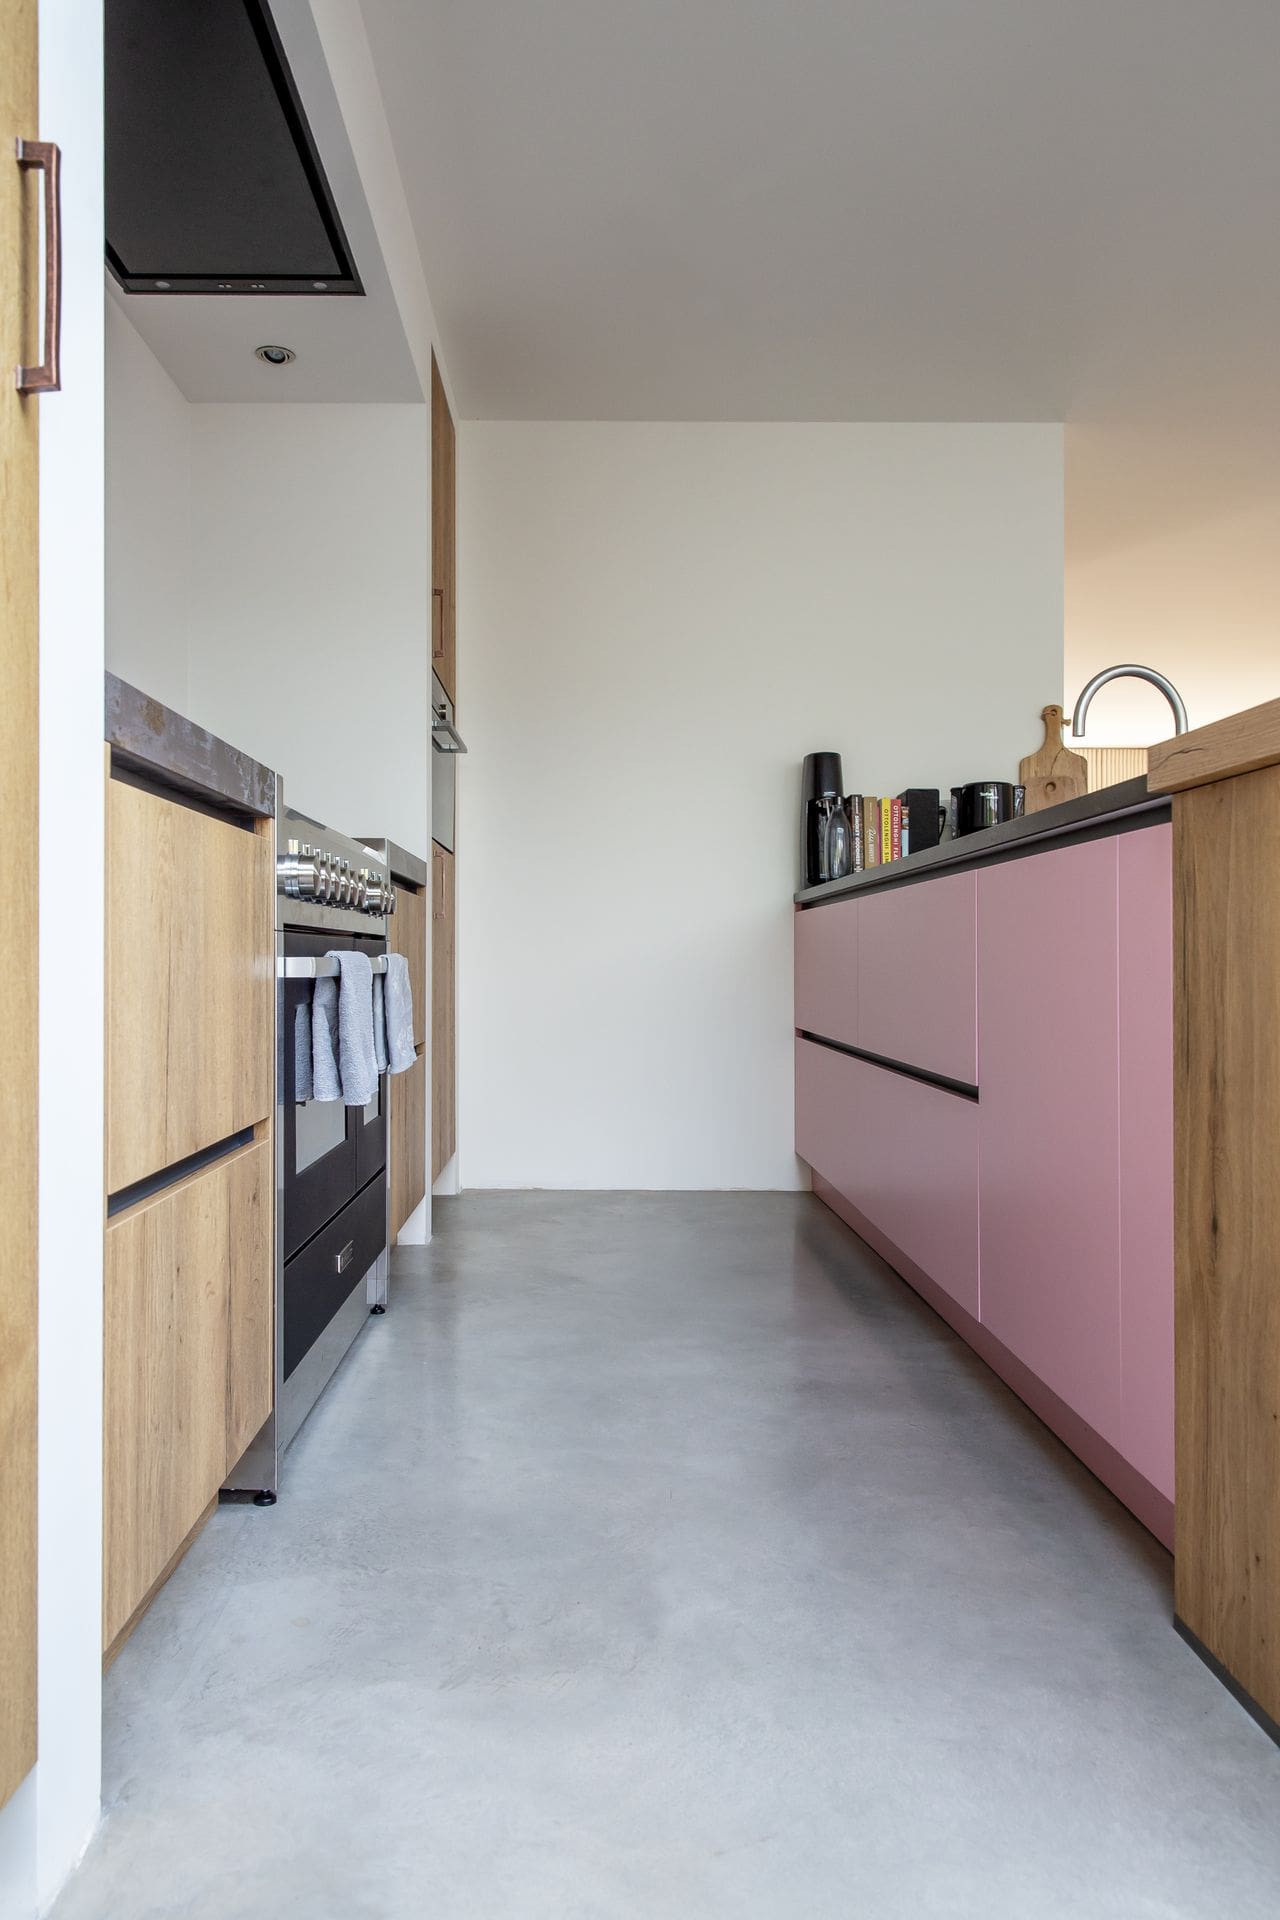 Gevlinderde betonvloer van Willem Designvloeren gecombineerd met een roze en houten keuken